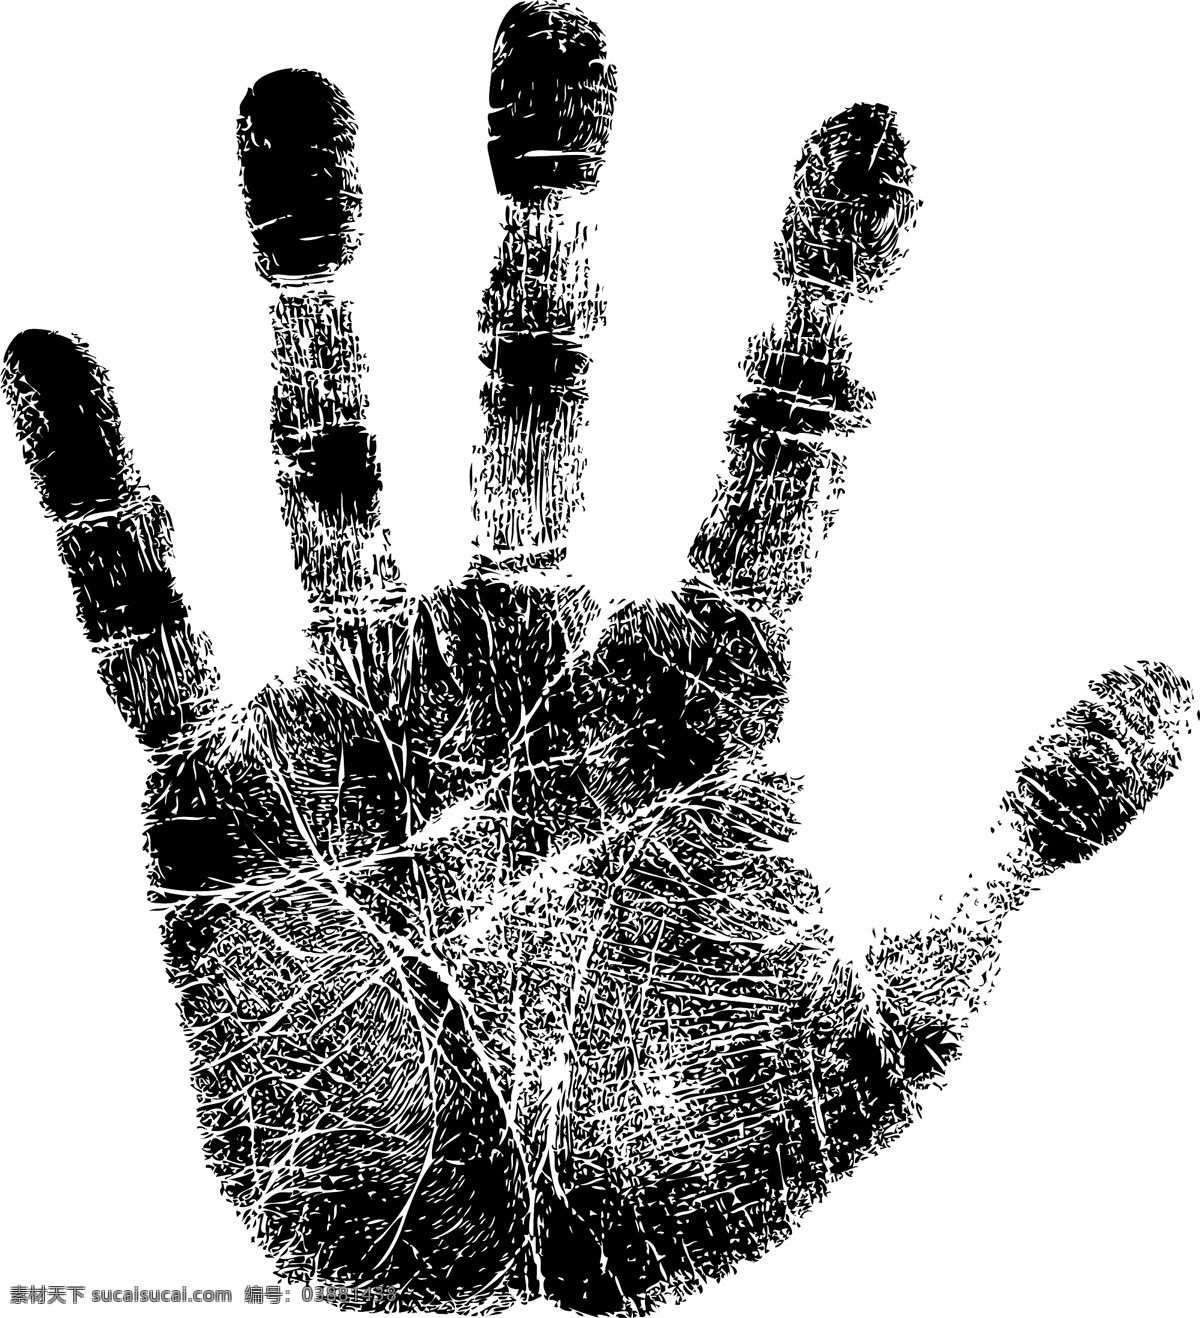 黑色手印 手掌 手印 手势 彩色 人体器官 手掌印 血手 矢量素材 白色